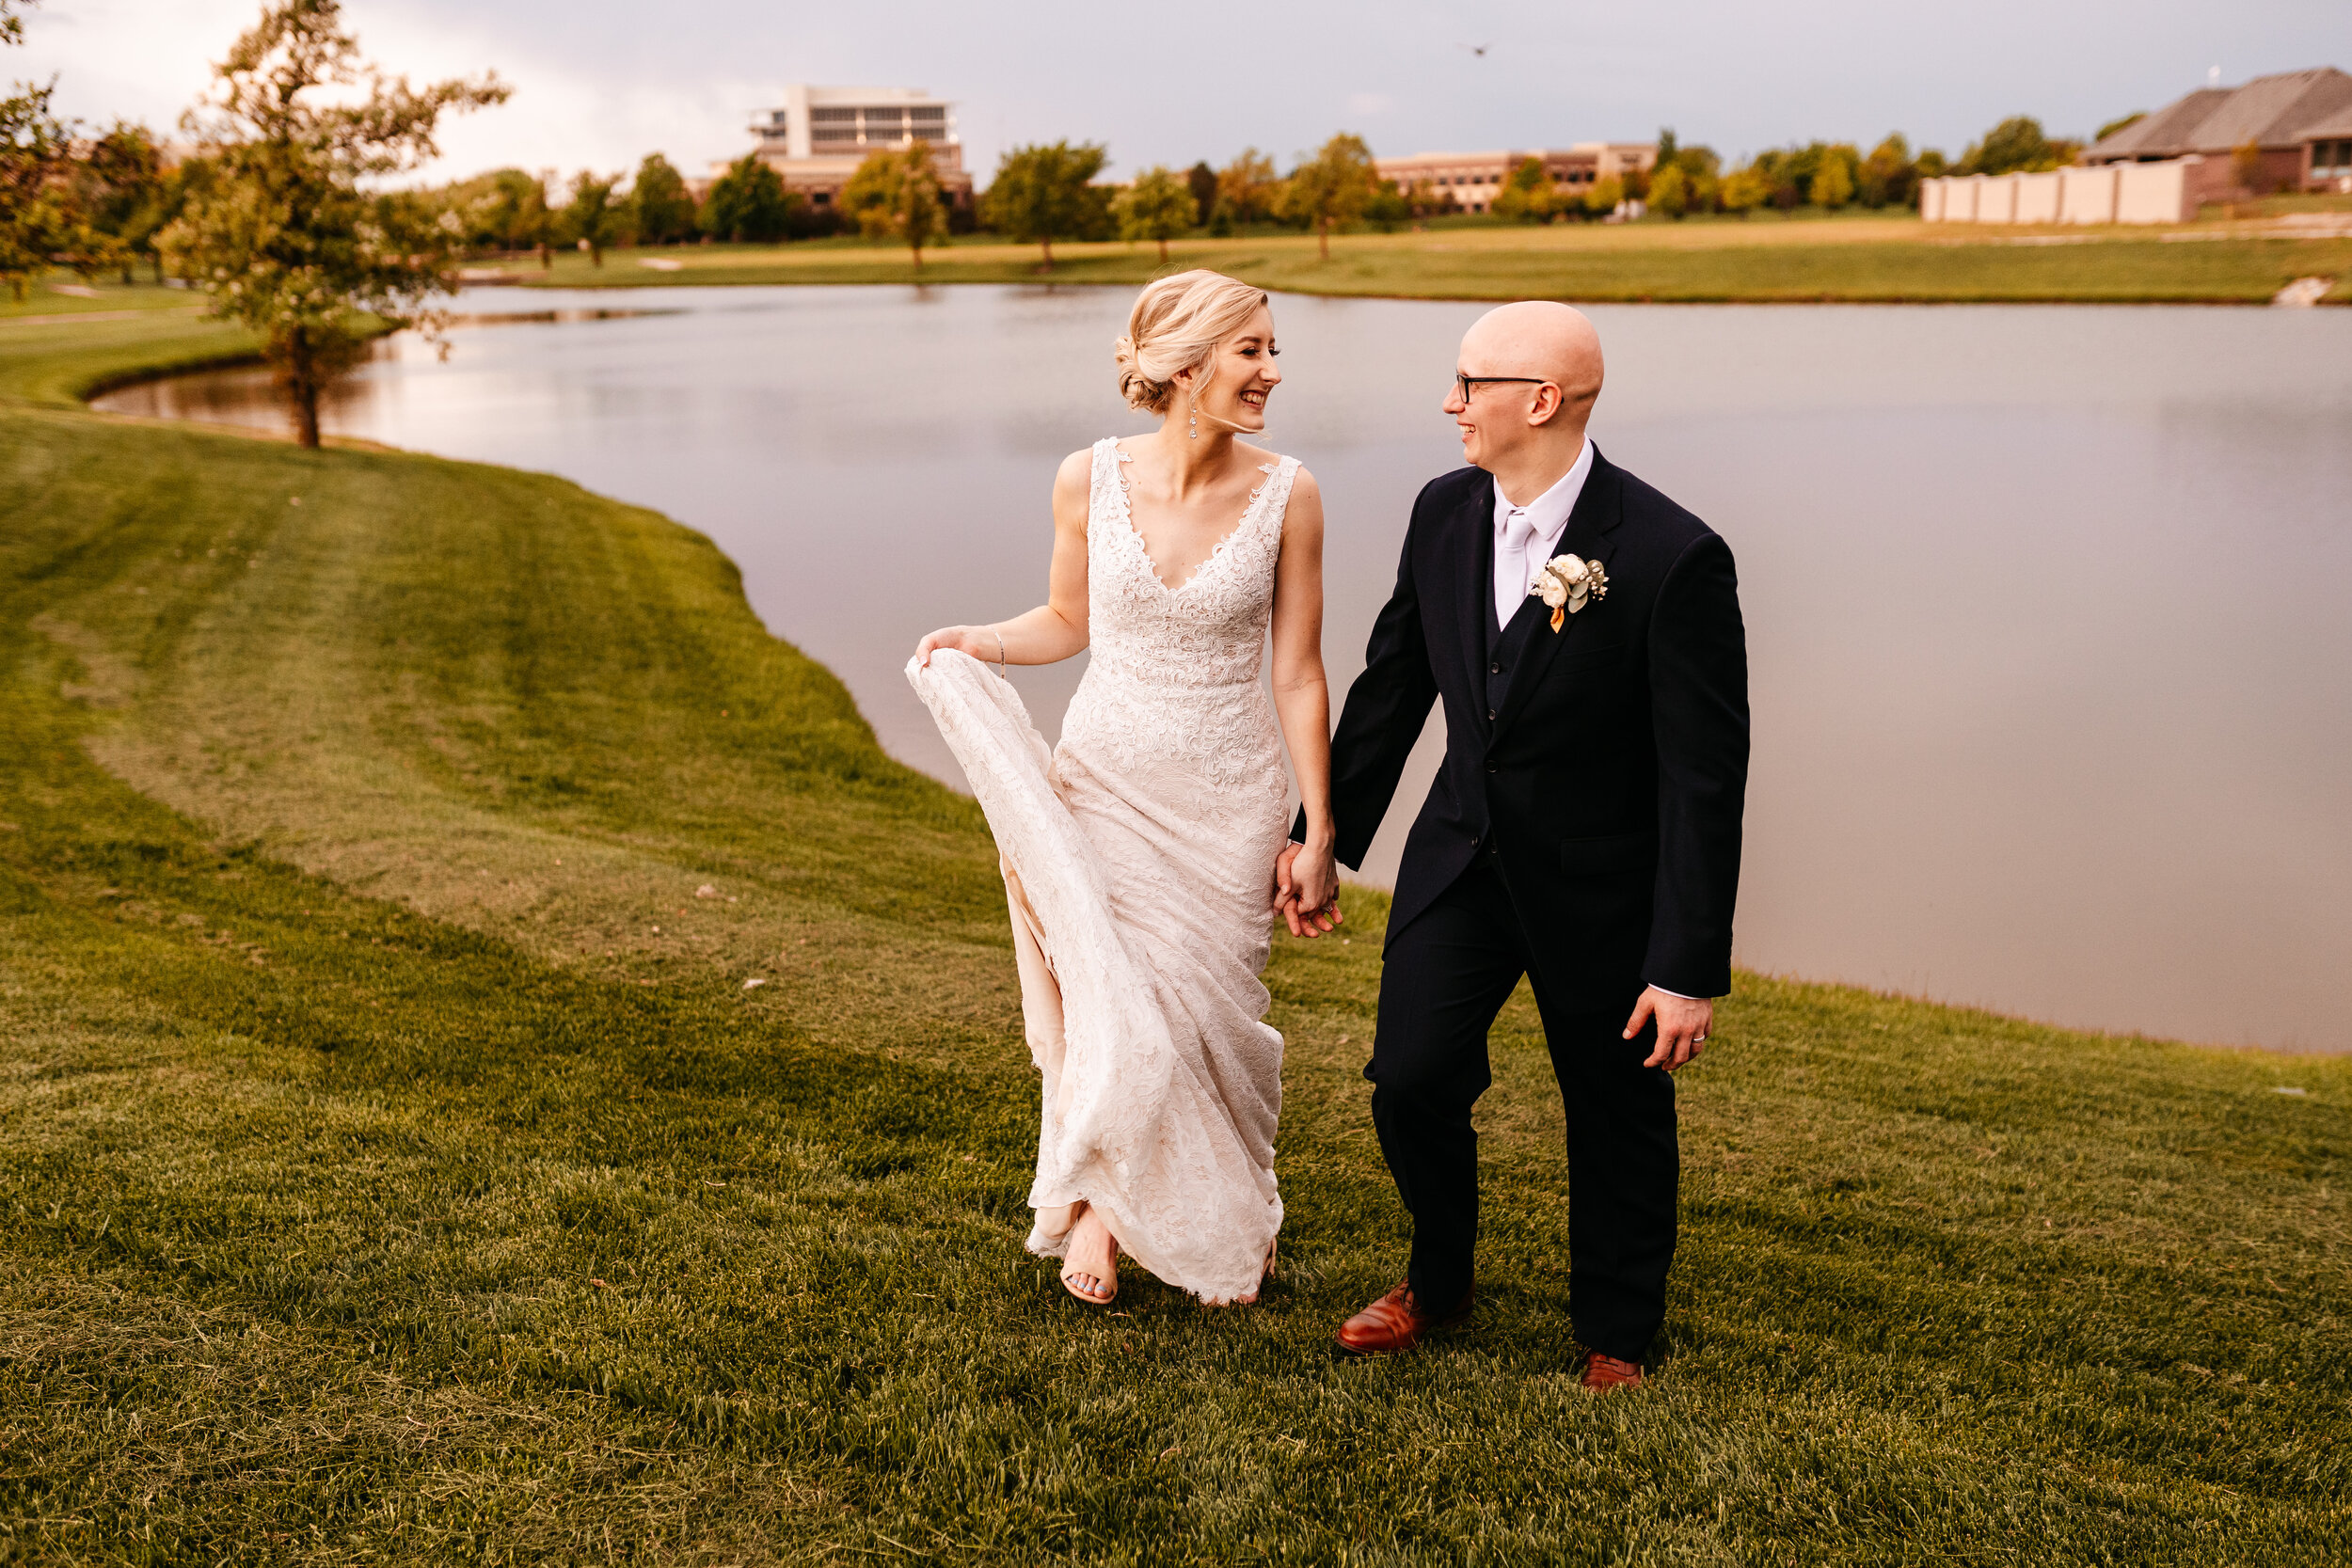 Amber + Nick - Modern Spring Wedding at Noah's Wichita, Kansas142.jpg